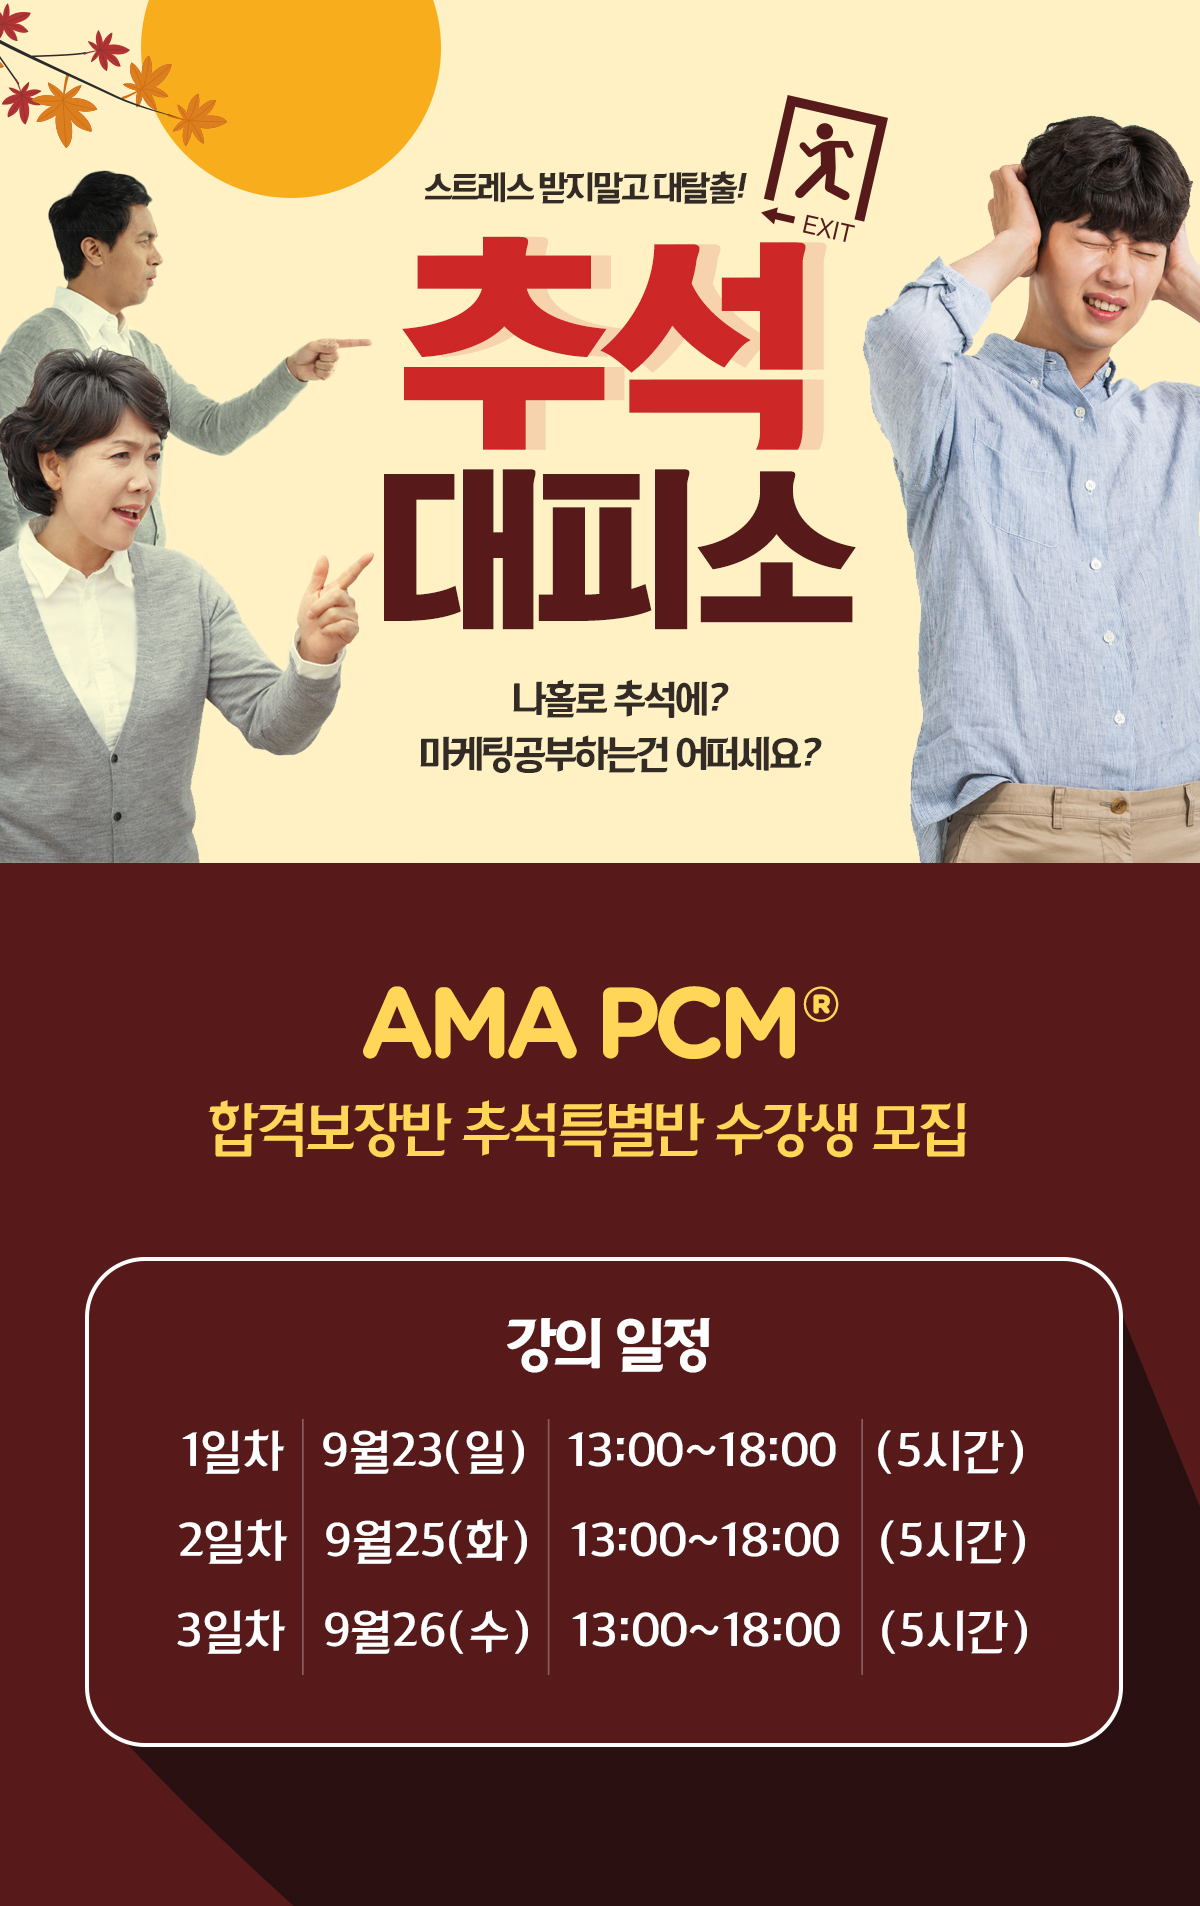 Ama-pcm-추석특강_180905.jpg